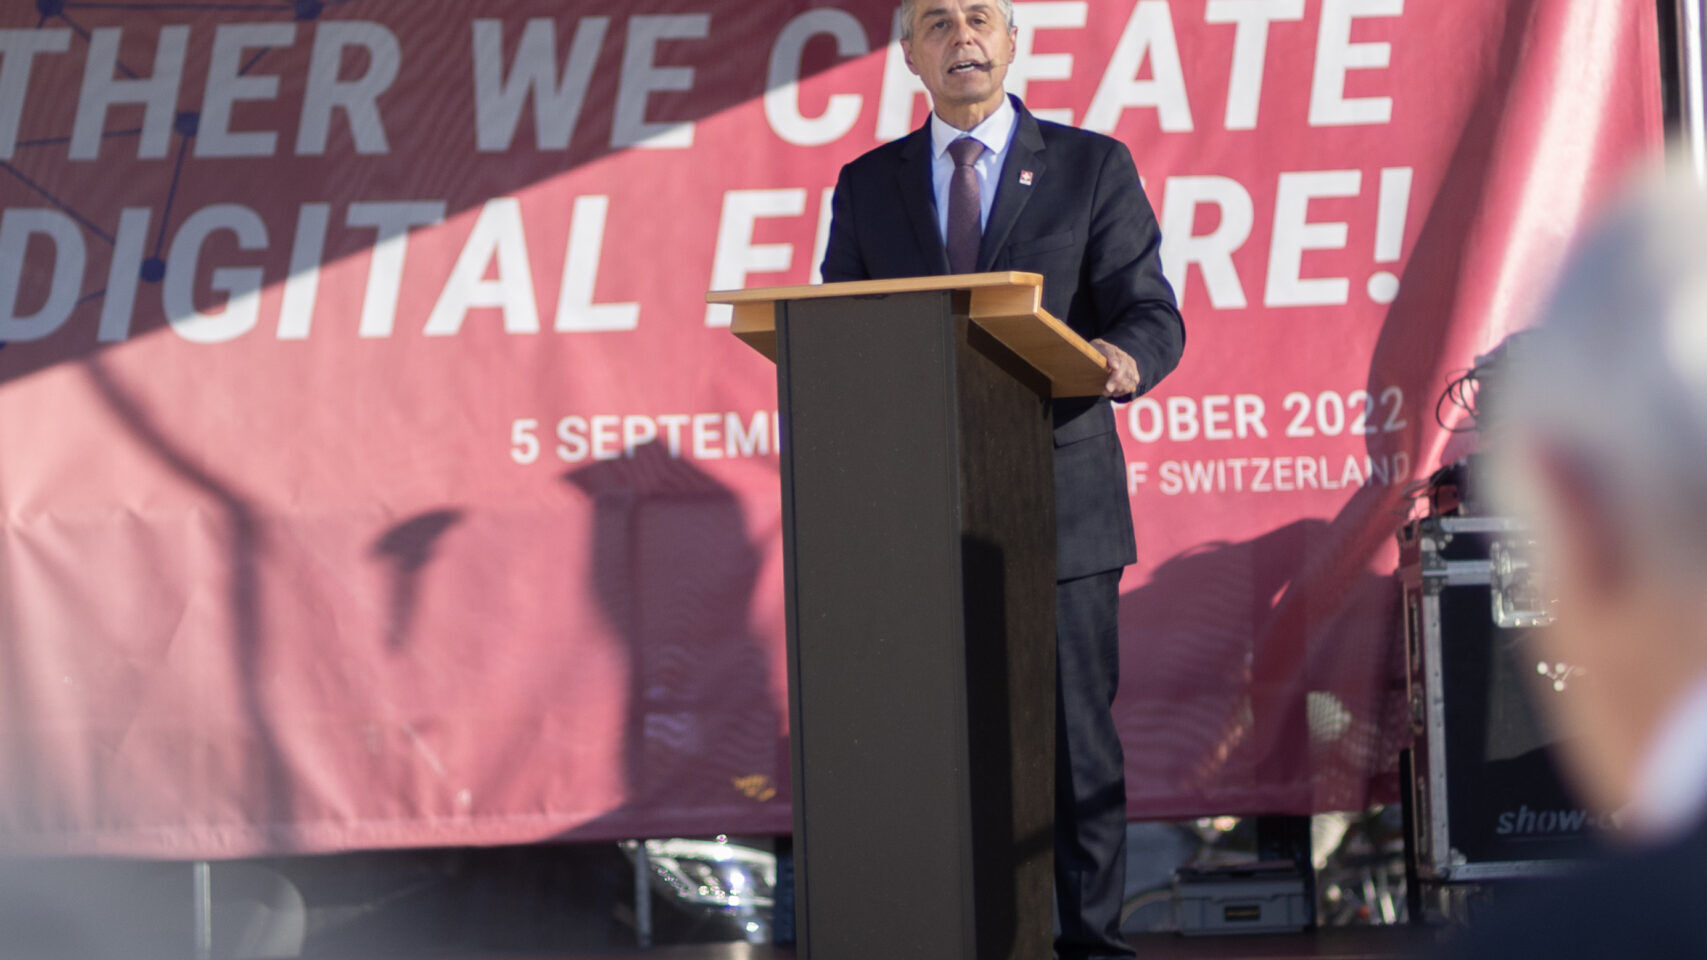 U Bernu su 2022. septembra svečano otvoreni 'Swiss Digital Journals' 5. Predsjednik Švicarske Konfederacije Ignazio Cassis je učestvovao u događaju i održao govor